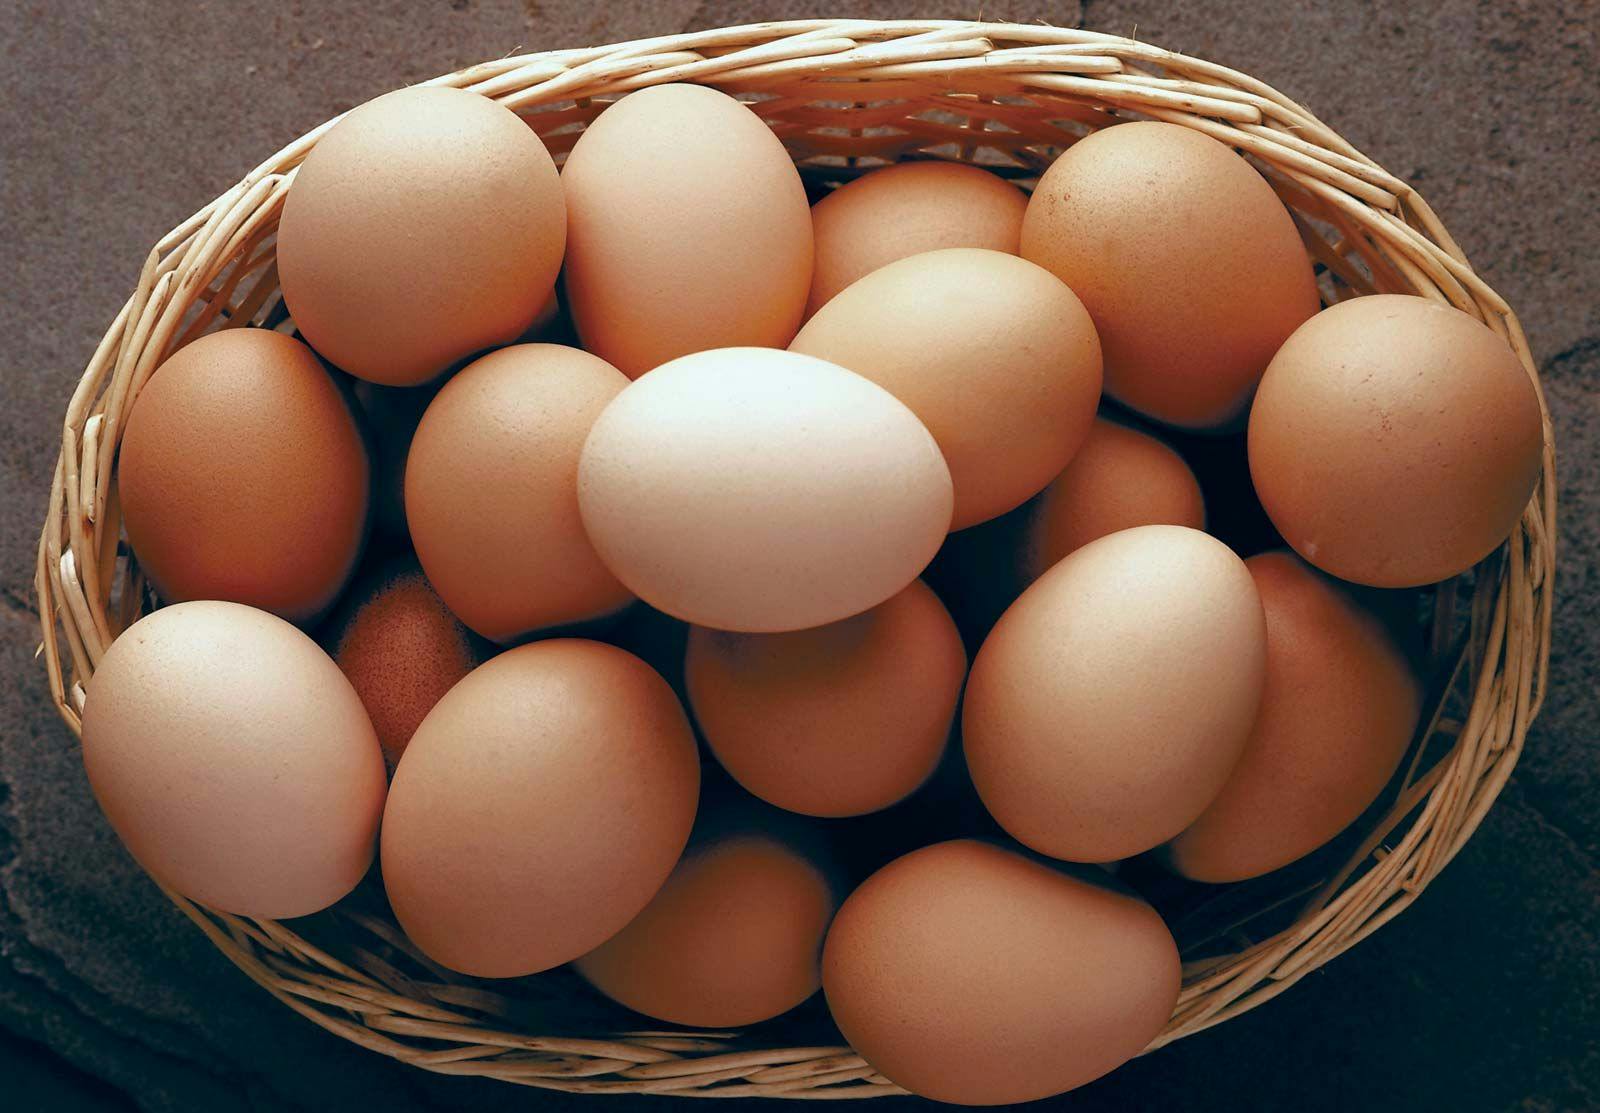 pasture raised eggs, at room temperature